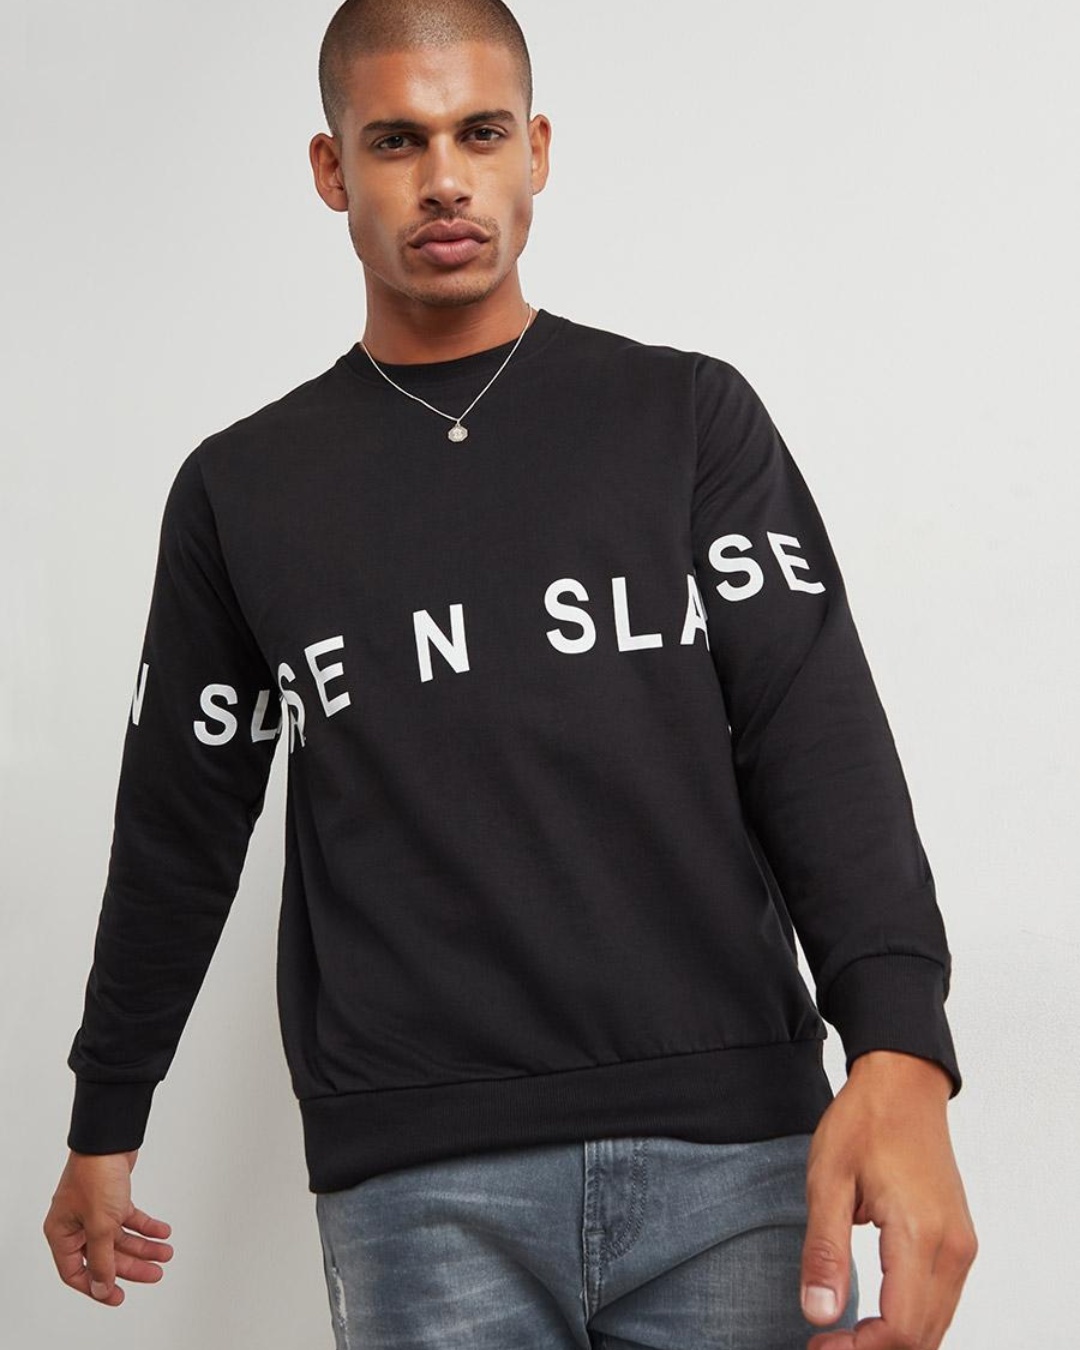 Buy Men's Black Typography Sweatshirt Online at Bewakoof